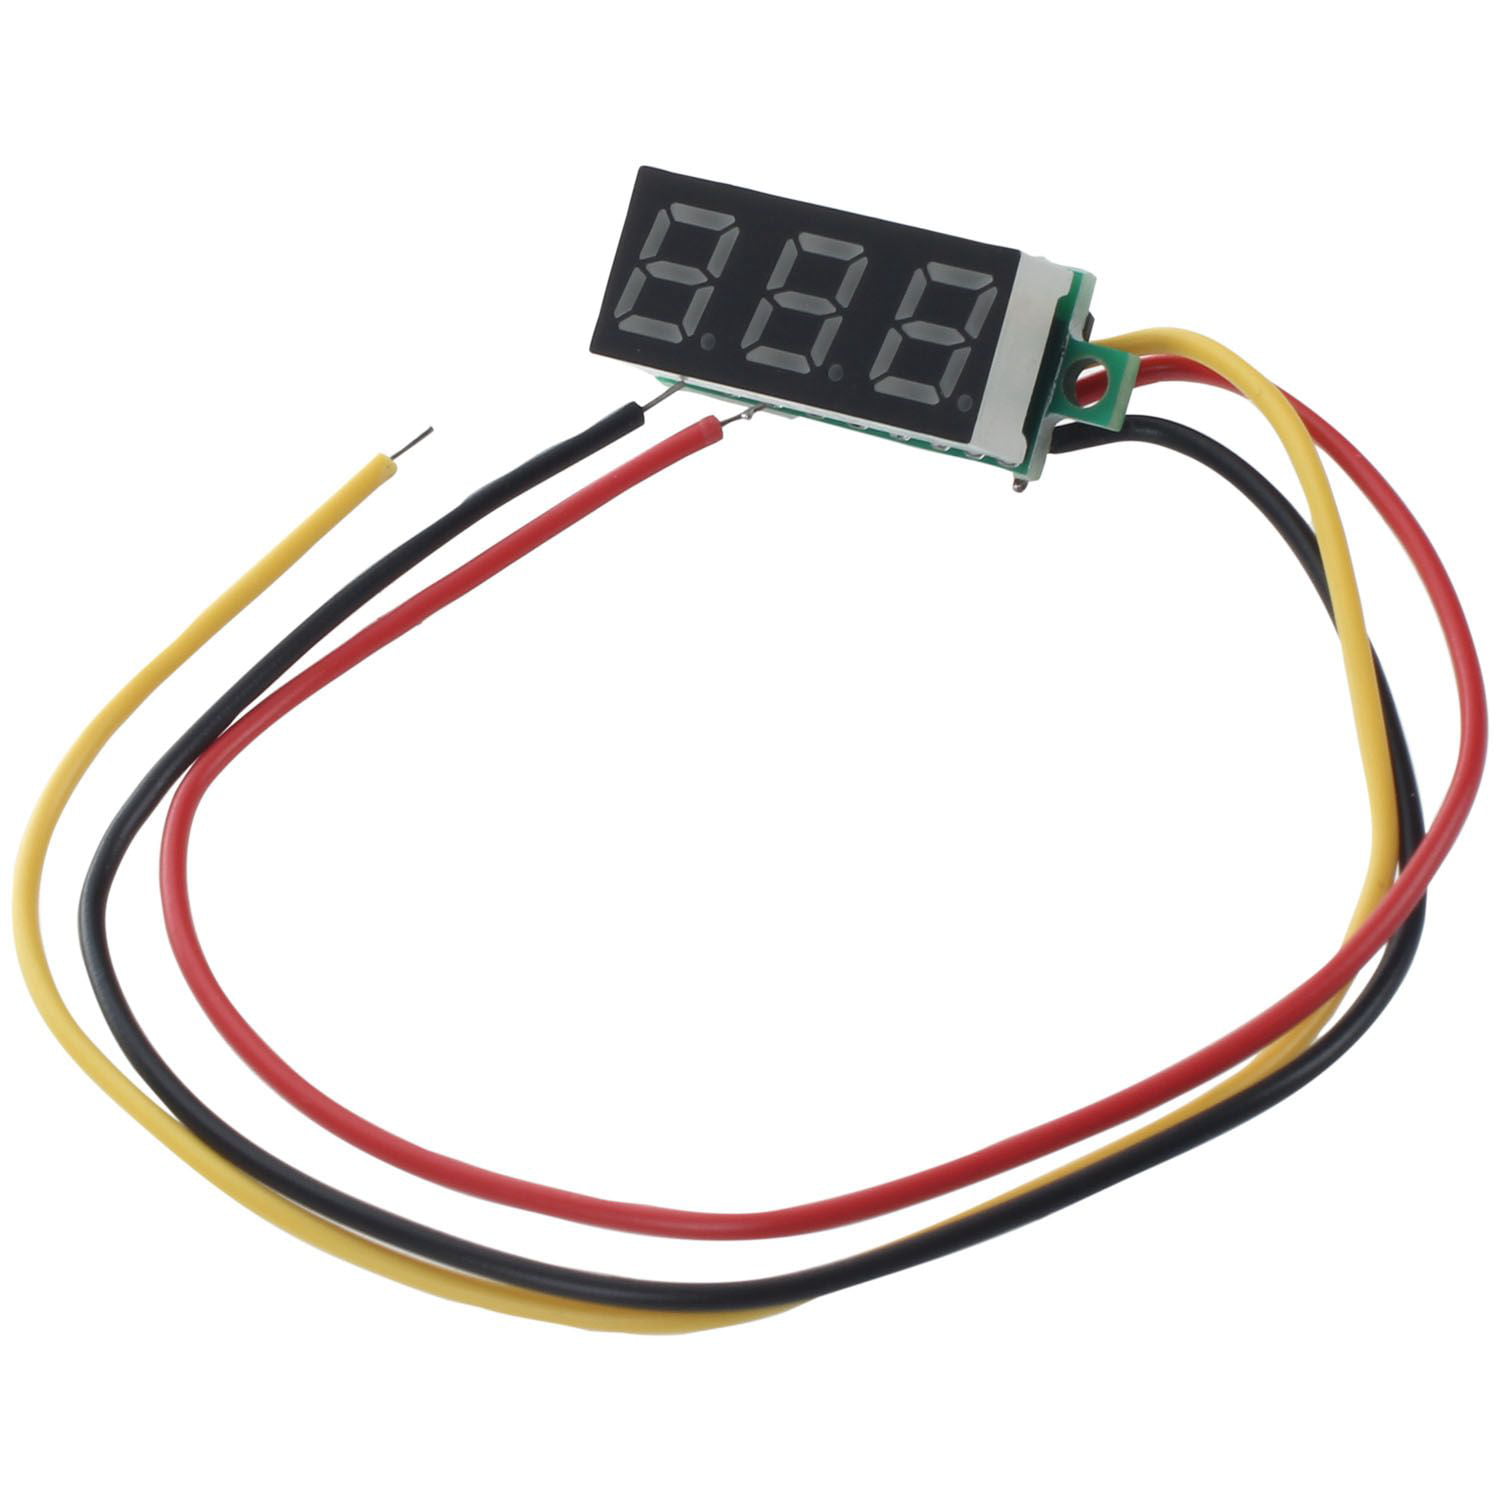 3 Wire Digital DC 0-100V LED Display Voltmeter Tester Voltage Meter Ammeter 